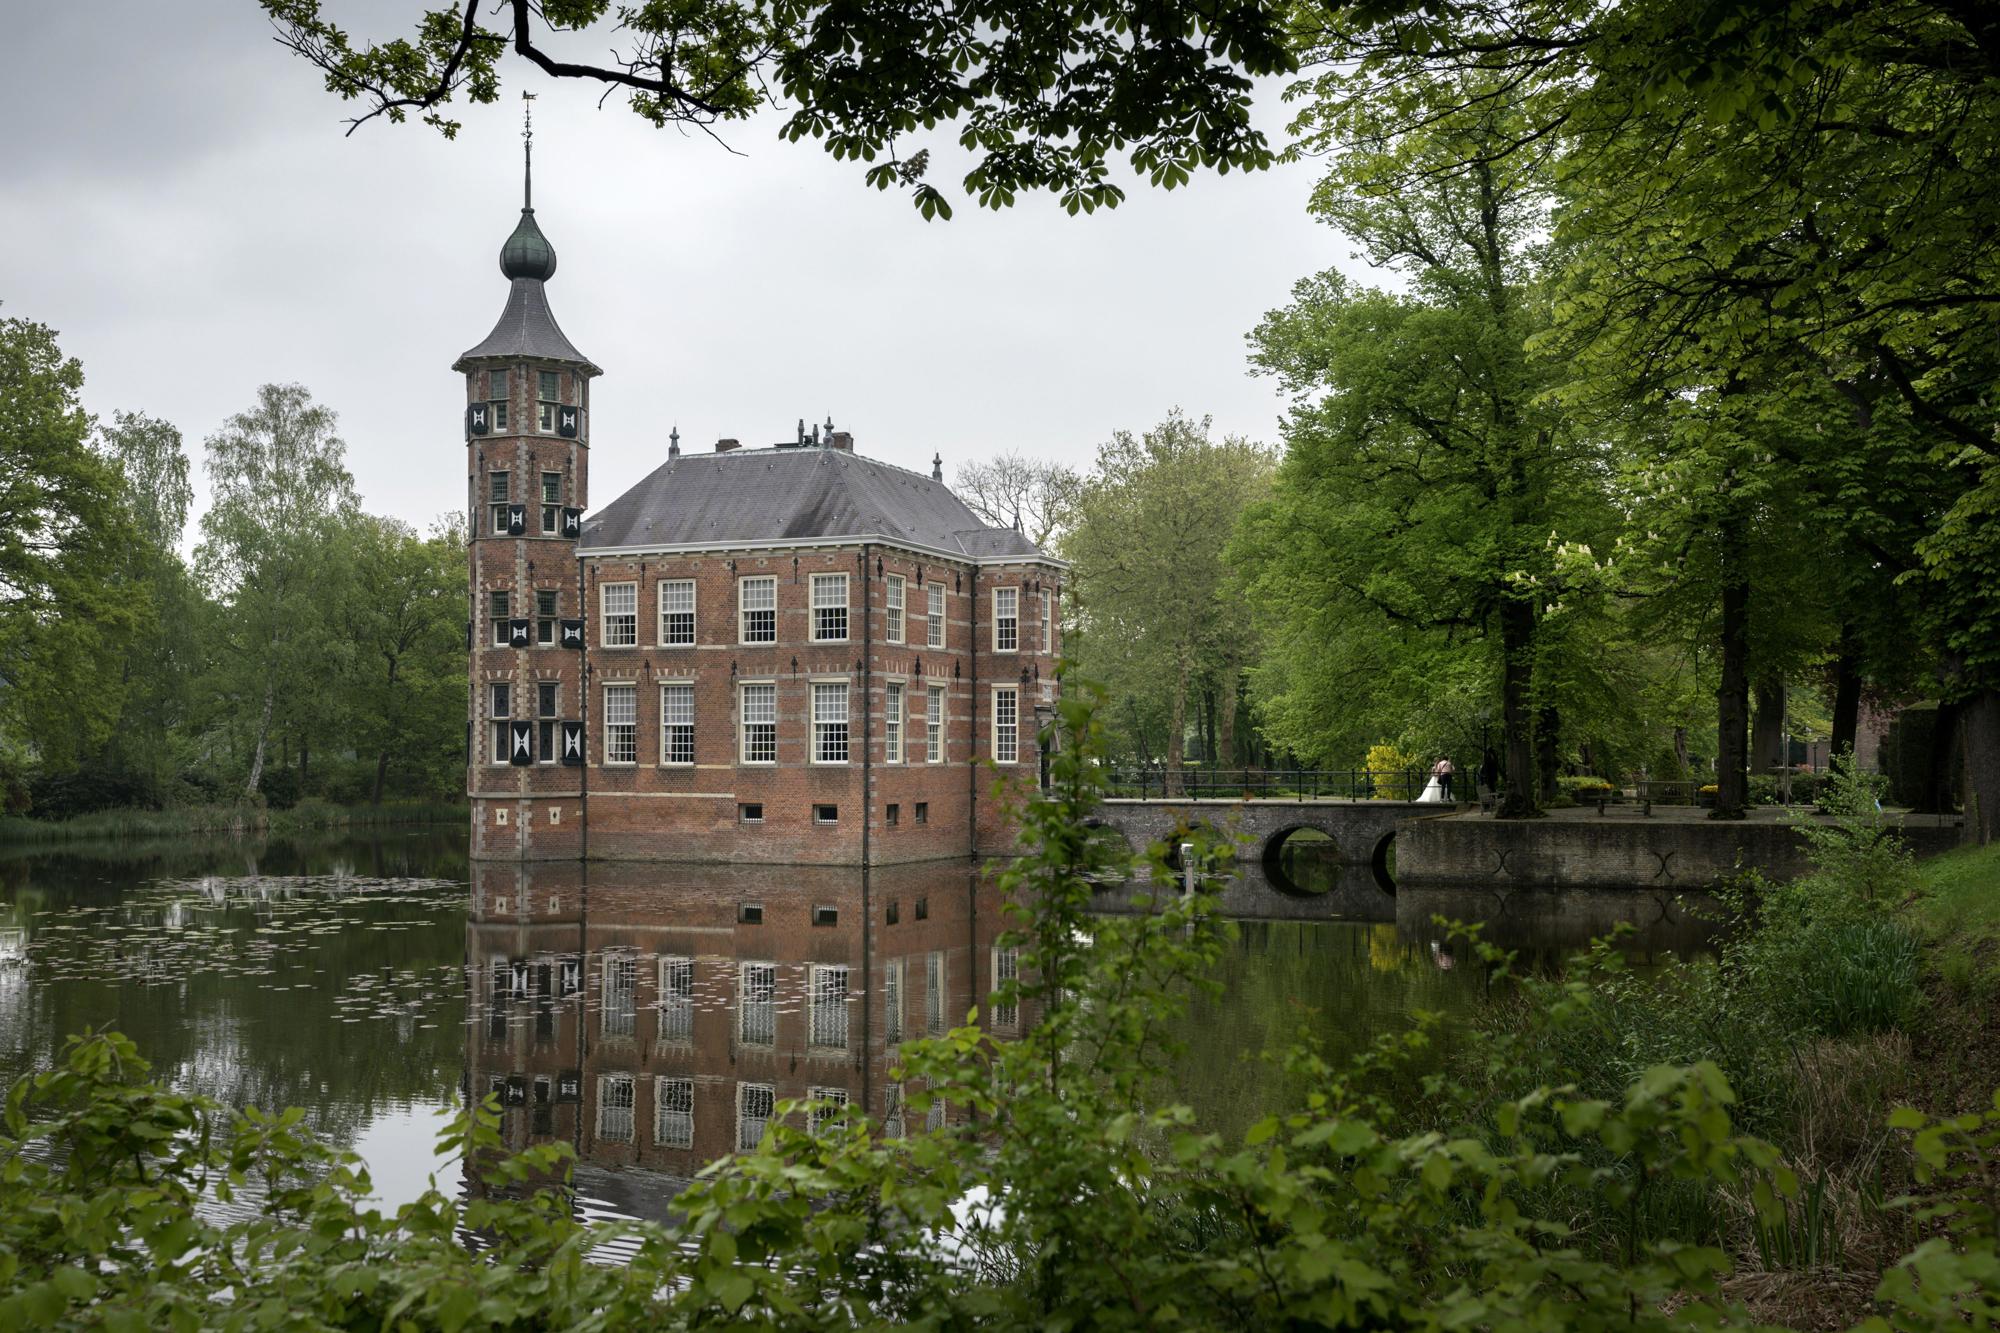  Breda: Die gastliche, grüne Stadt